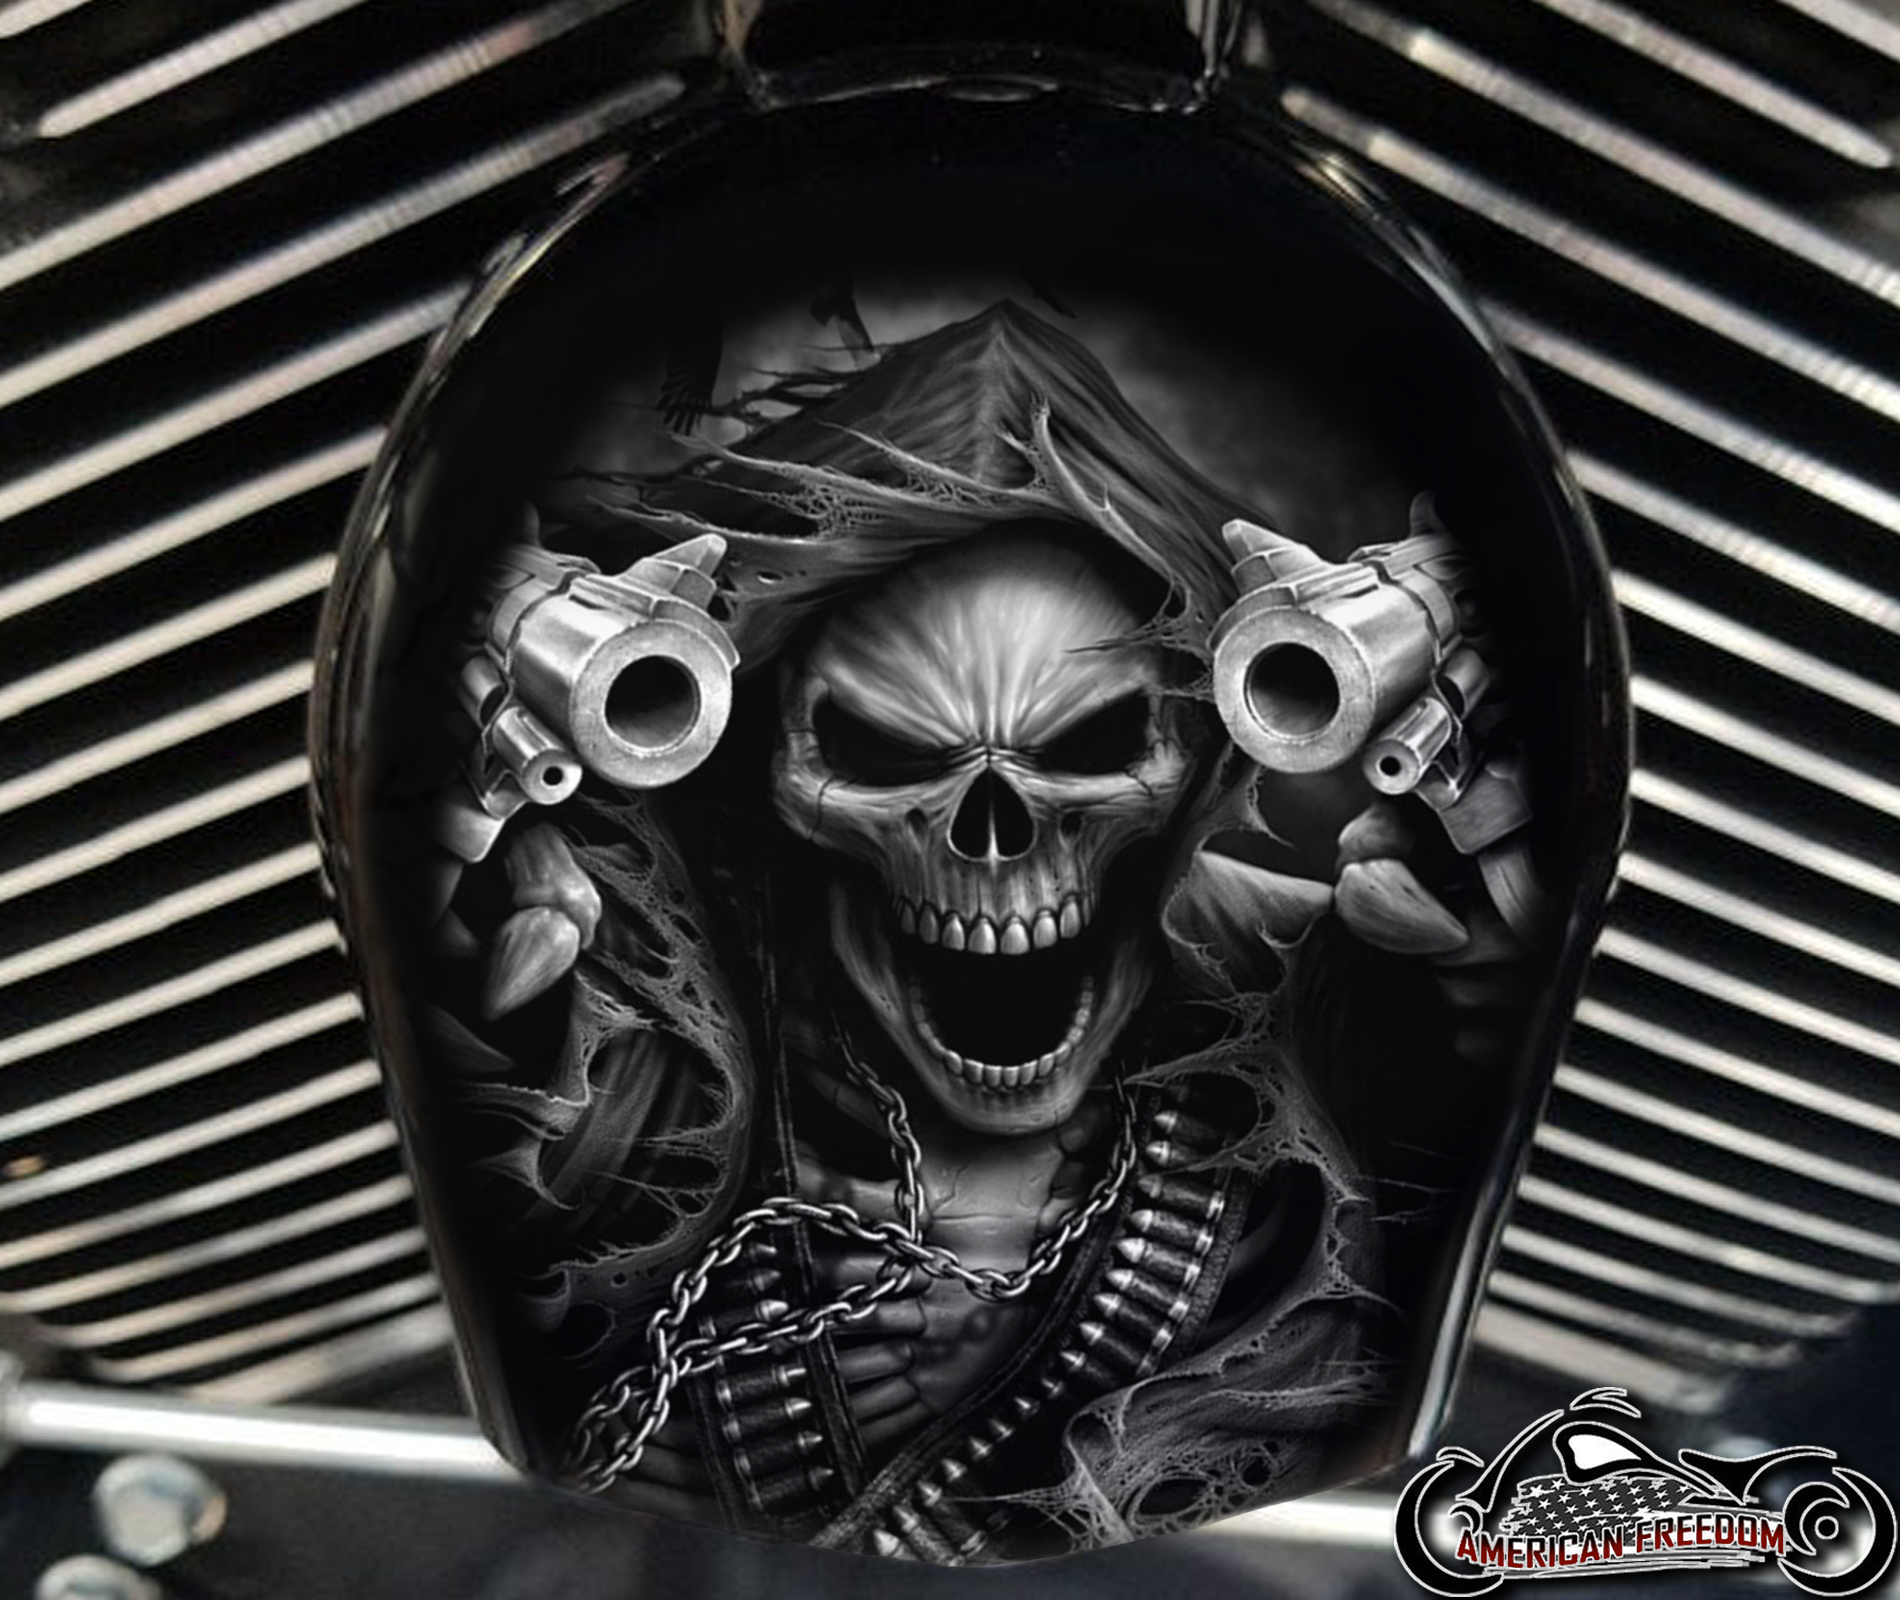 Custom Horn Cover - Gunfighter Reaper B&W